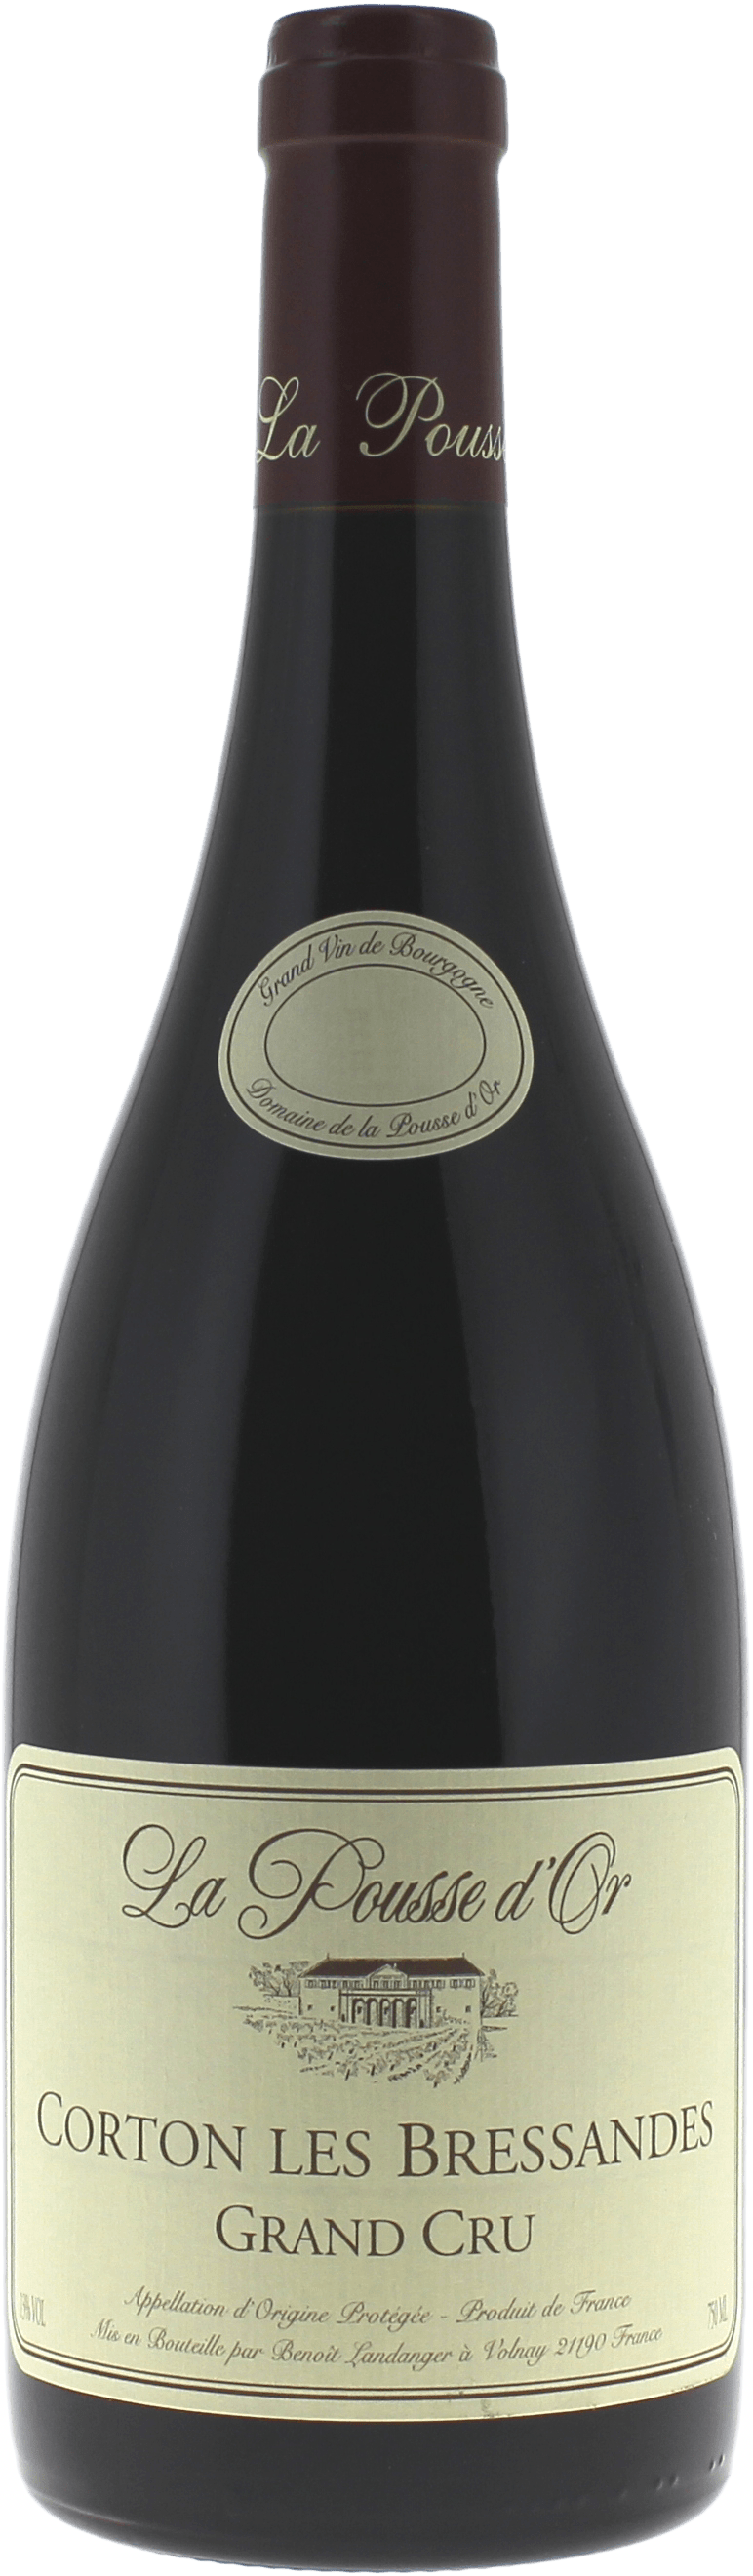 Corton les bressandes 2017 Domaine POUSSE D'OR, Bourgogne rouge